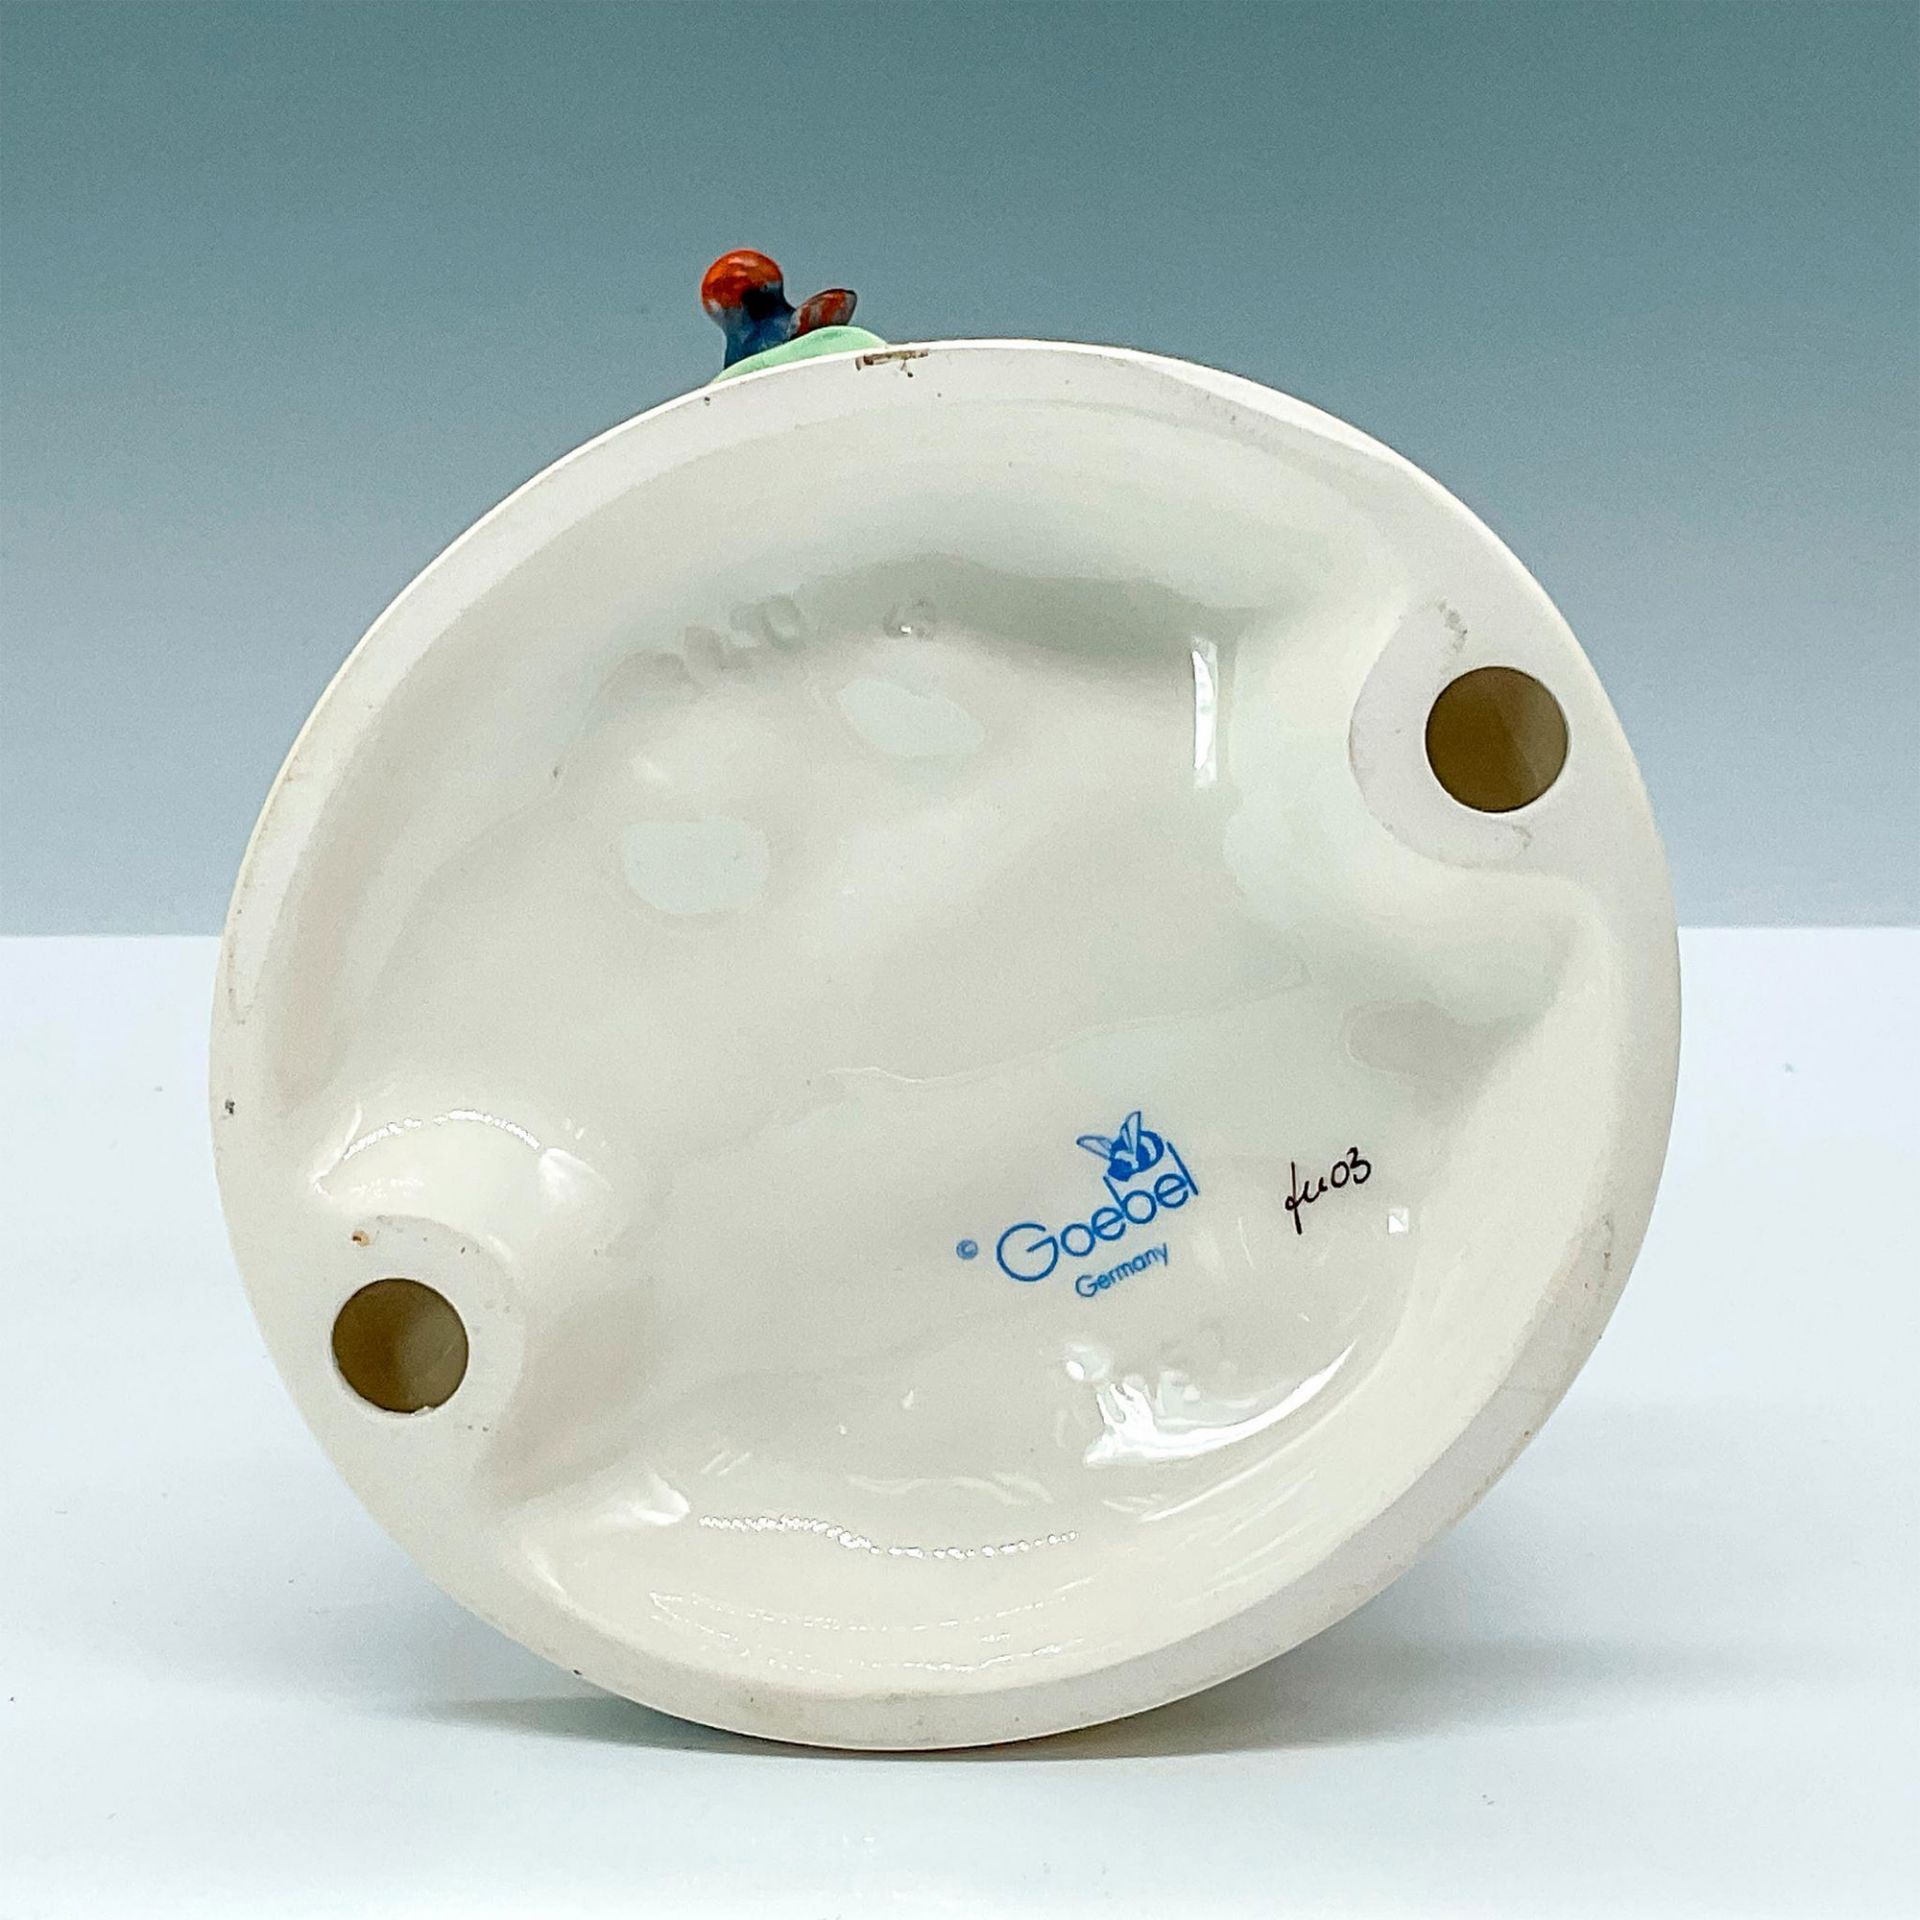 Goebel Hummel Porcelain Figurine, Letter to Santa Claus - Image 3 of 3